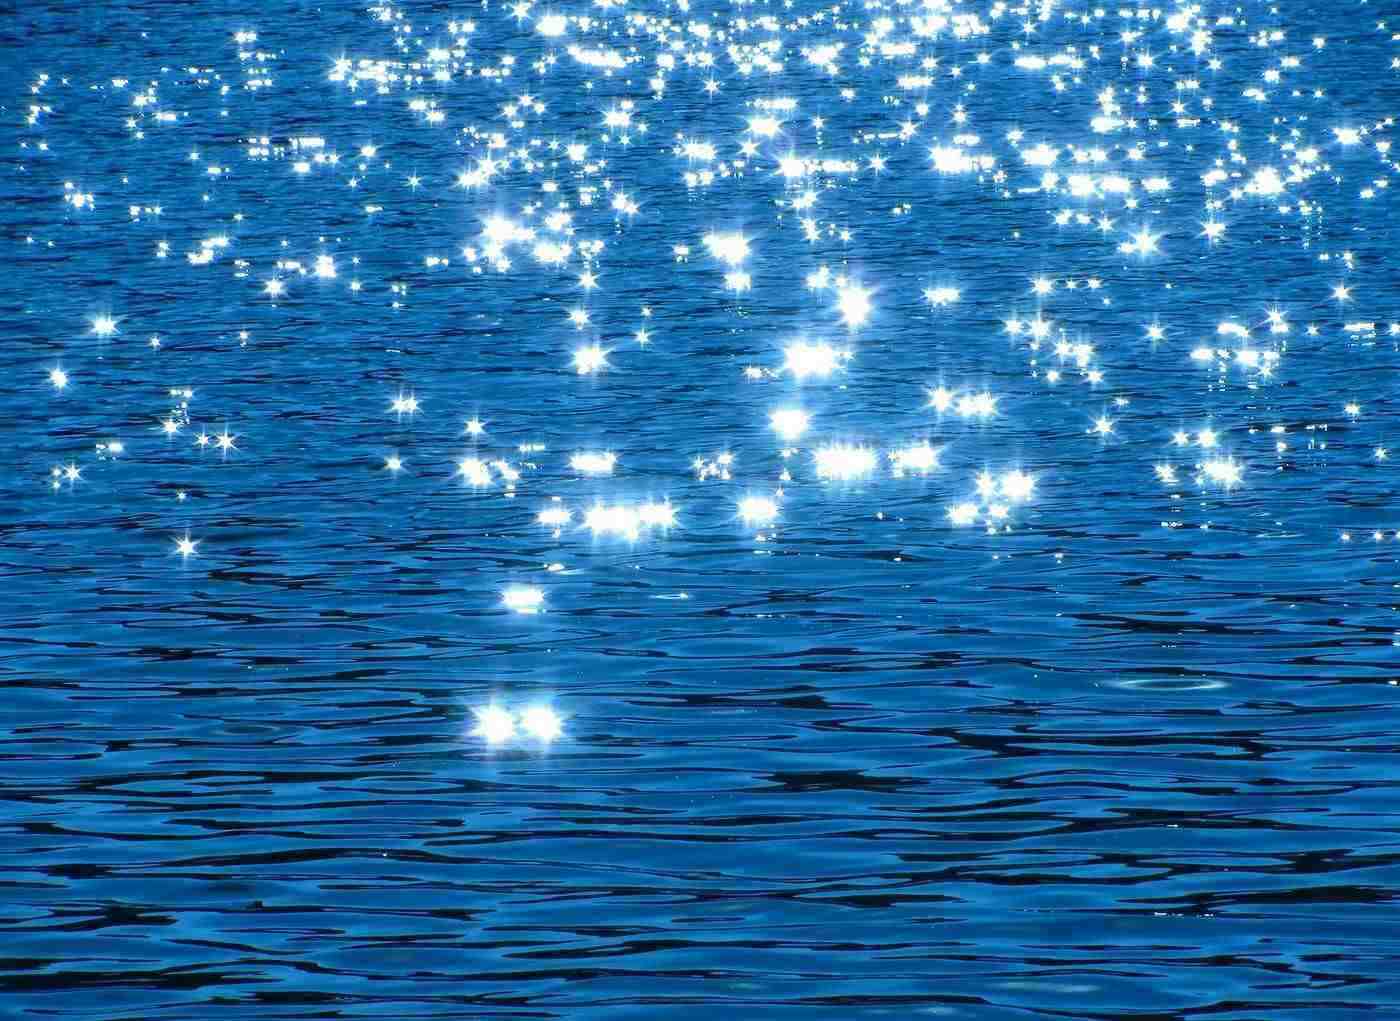 Sparkling lake